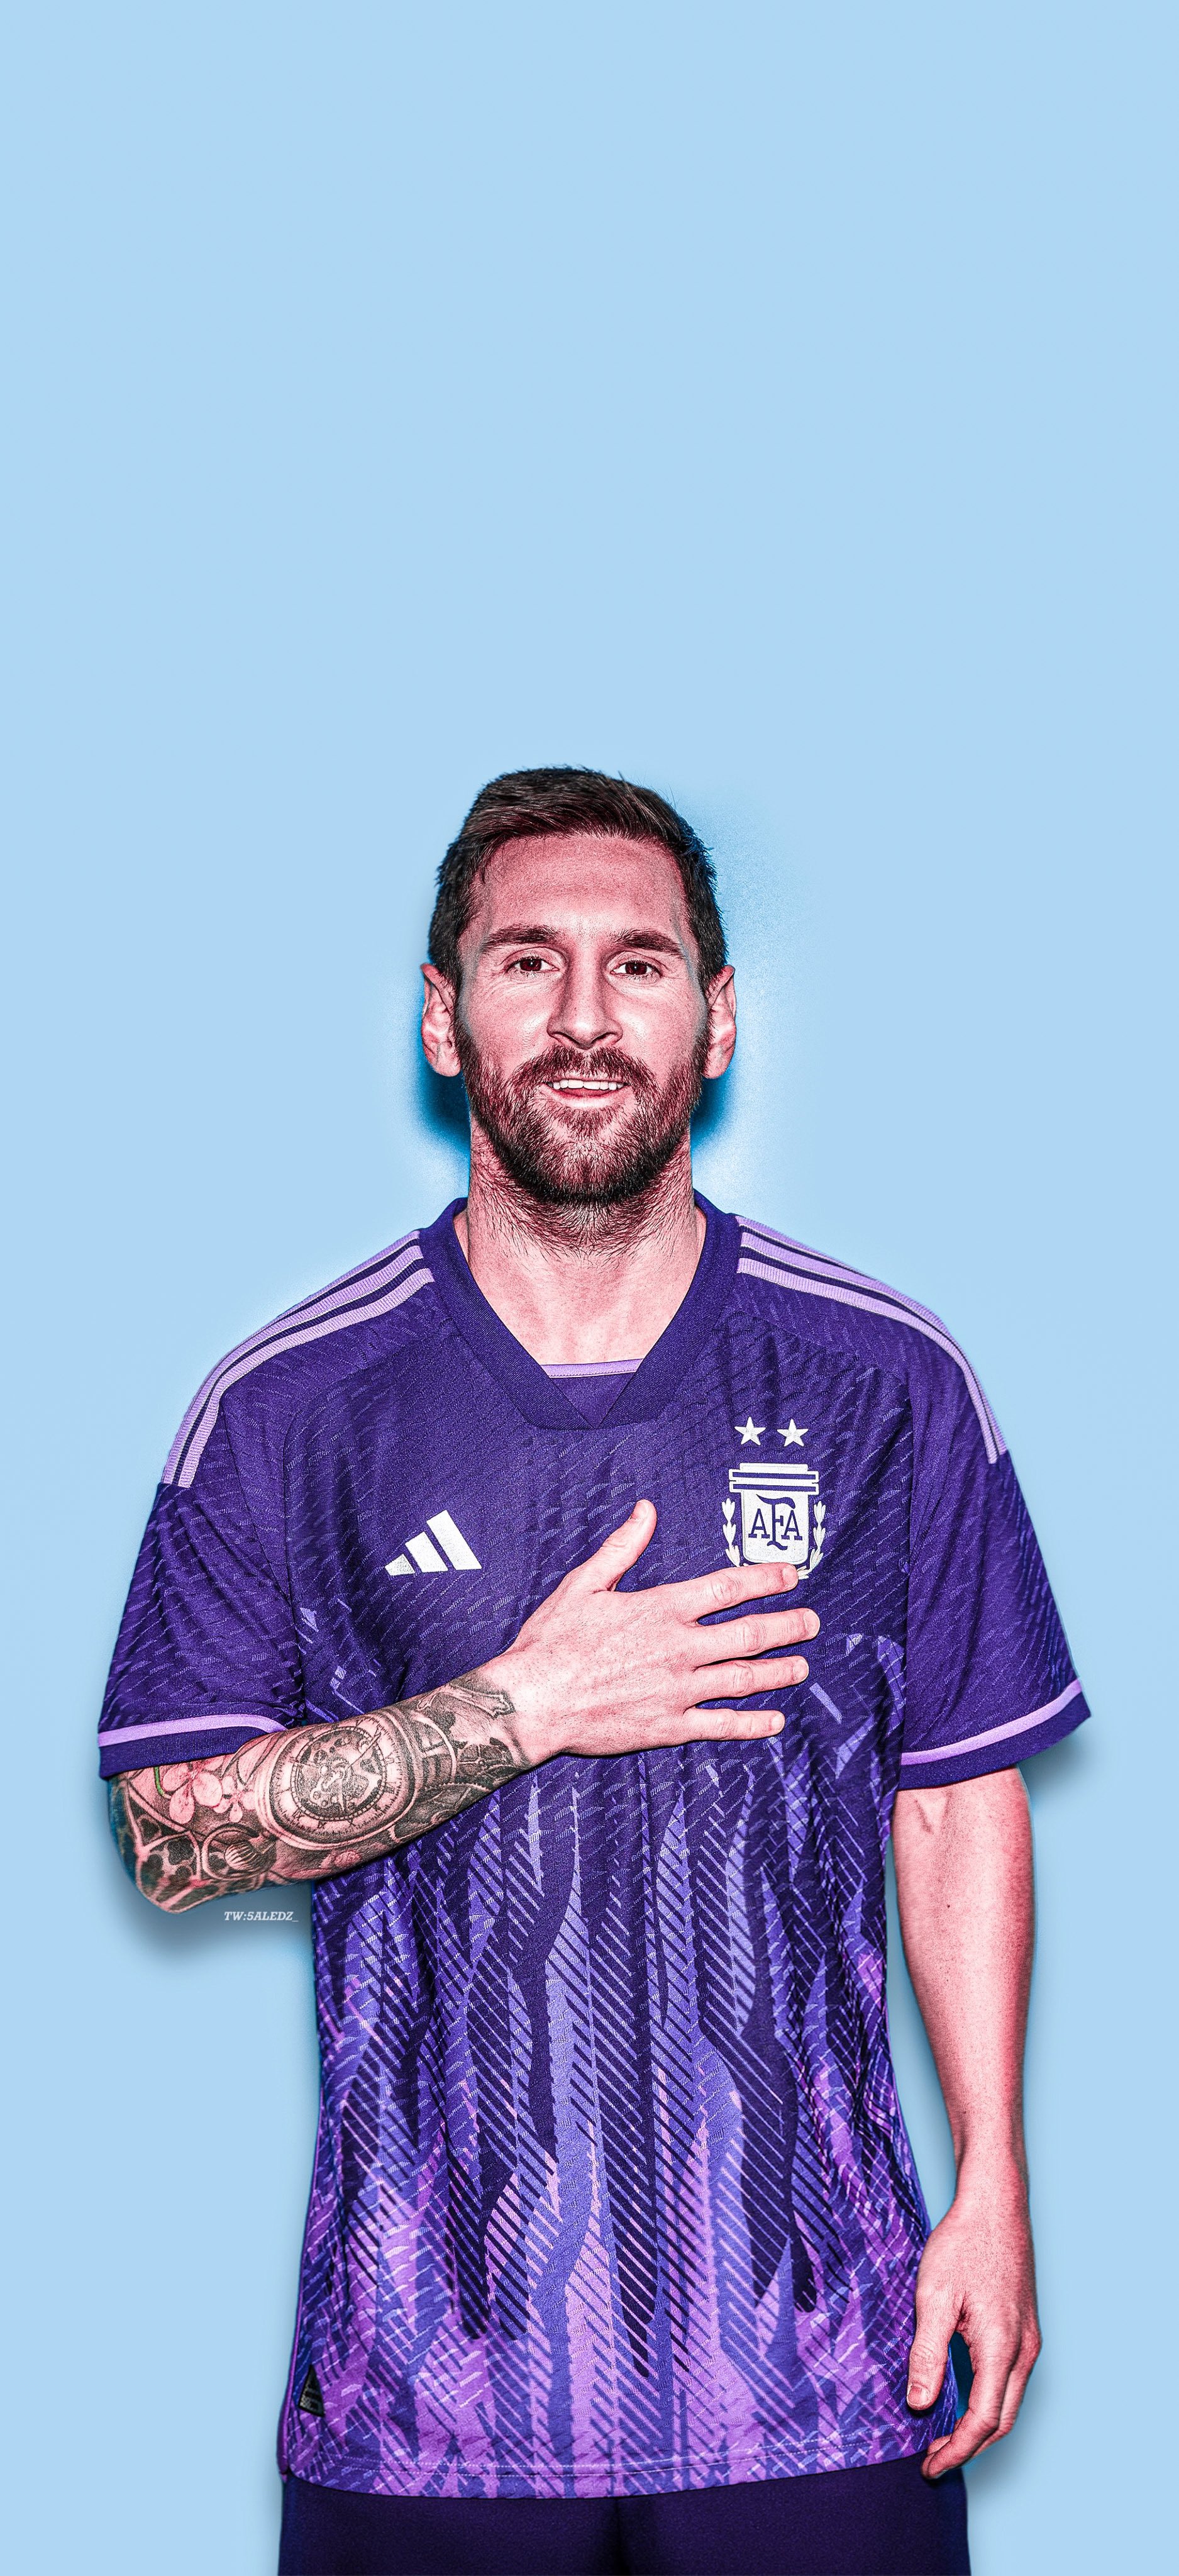 Lionel Messi: Hãy thưởng thức hình ảnh của ngôi sao bóng đá Lionel Messi, người được coi là một trong những cầu thủ xuất sắc nhất thế giới. Xem những hình ảnh của anh ta trên sân cỏ sẽ khiến bạn cảm thấy kích thích và nỗ lực hơn trong cuộc sống.